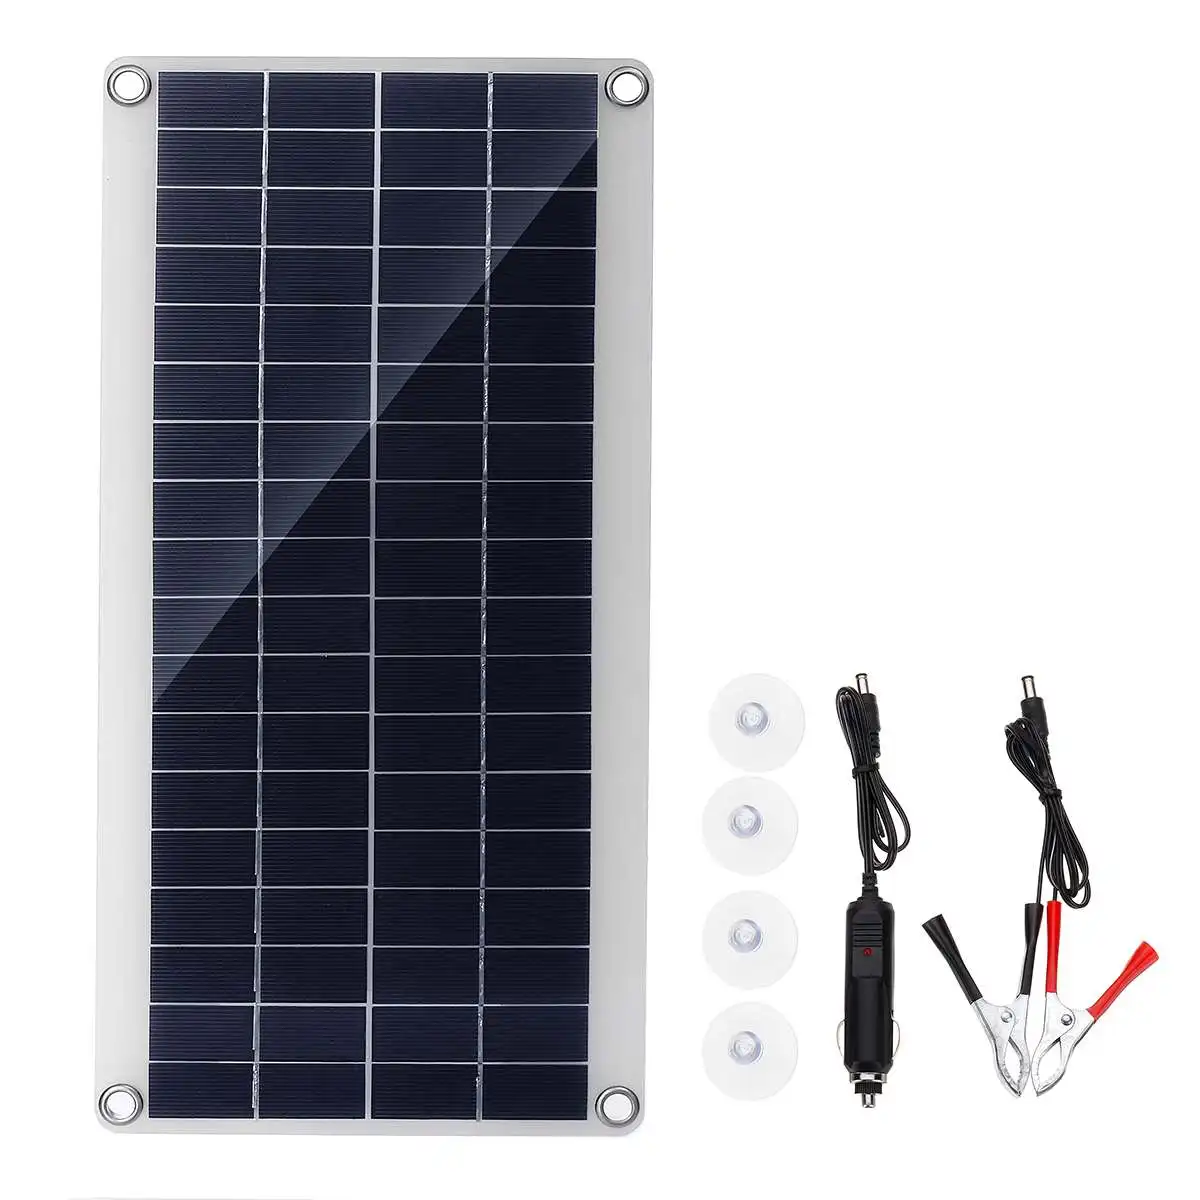 Водонепроницаемая портативная солнечная панель 300 Вт 12/5 В постоянного тока USB